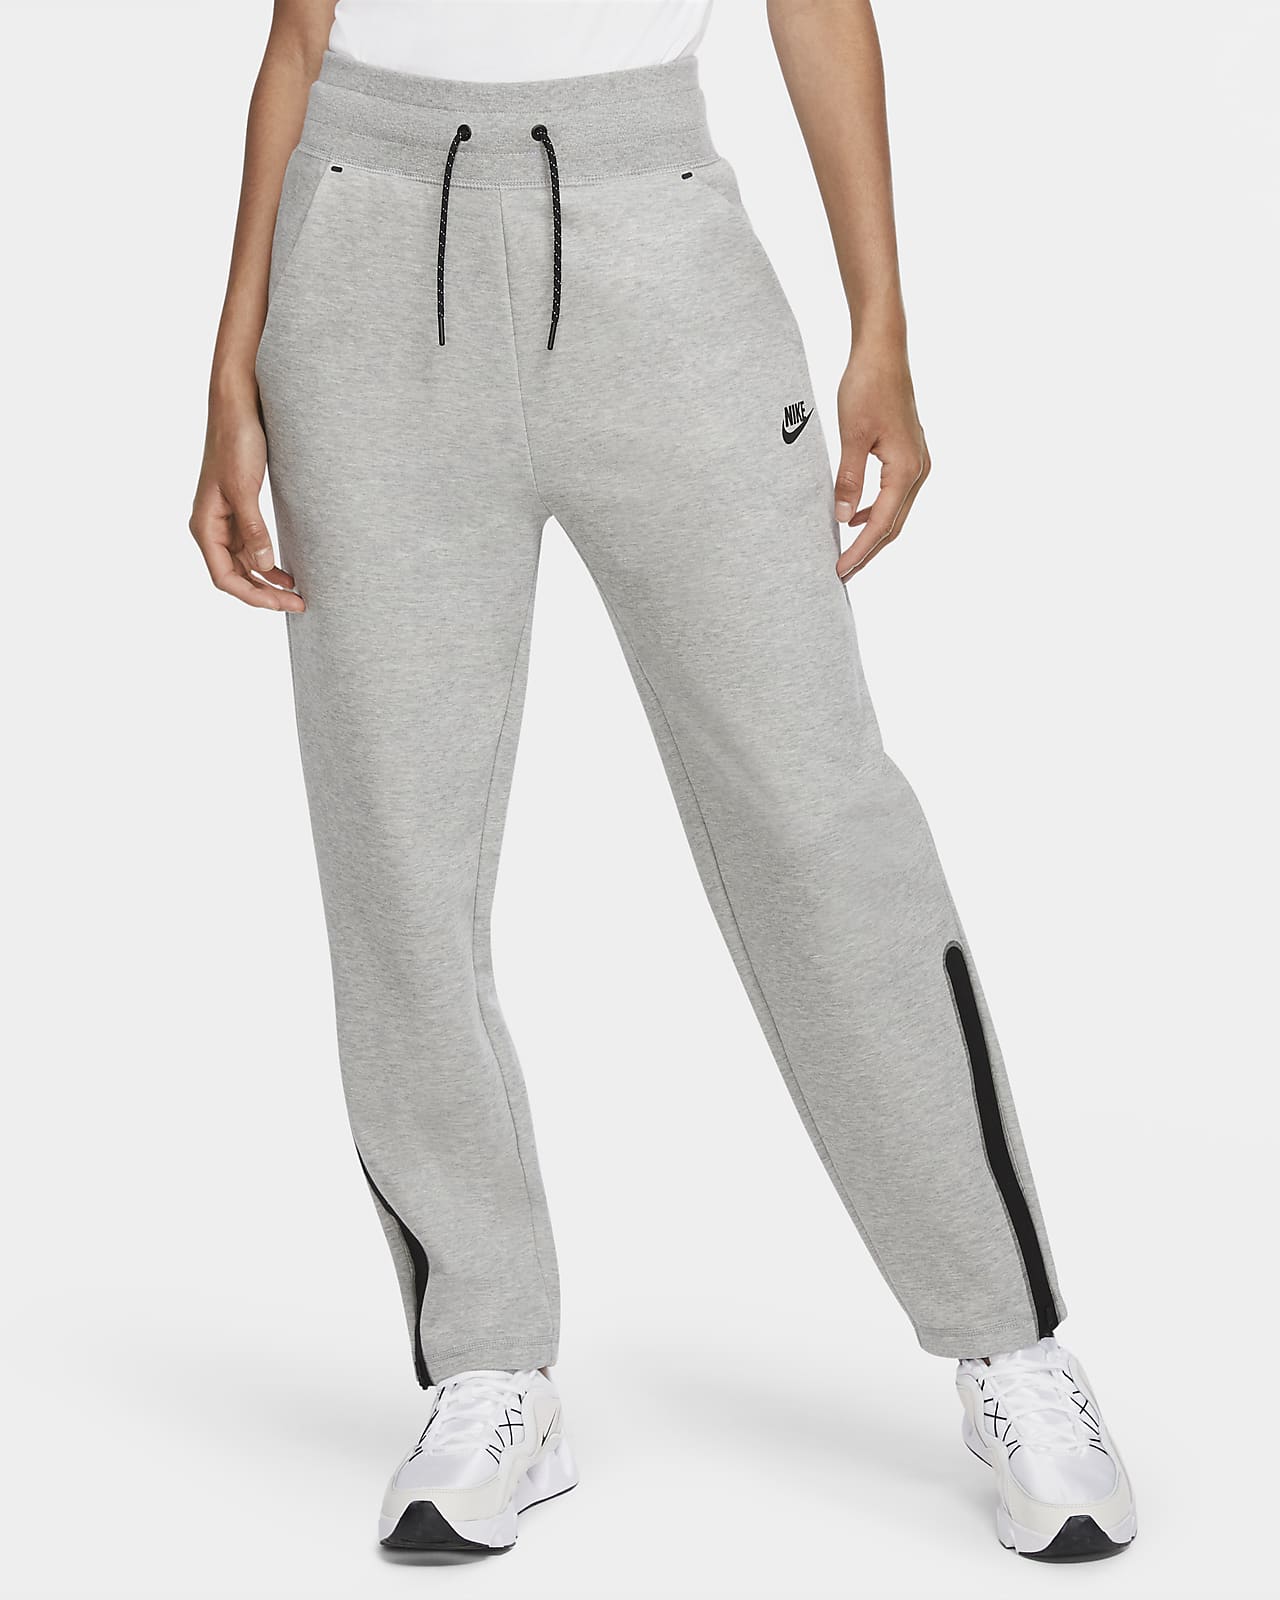 women's pants nike sportswear tech fleece